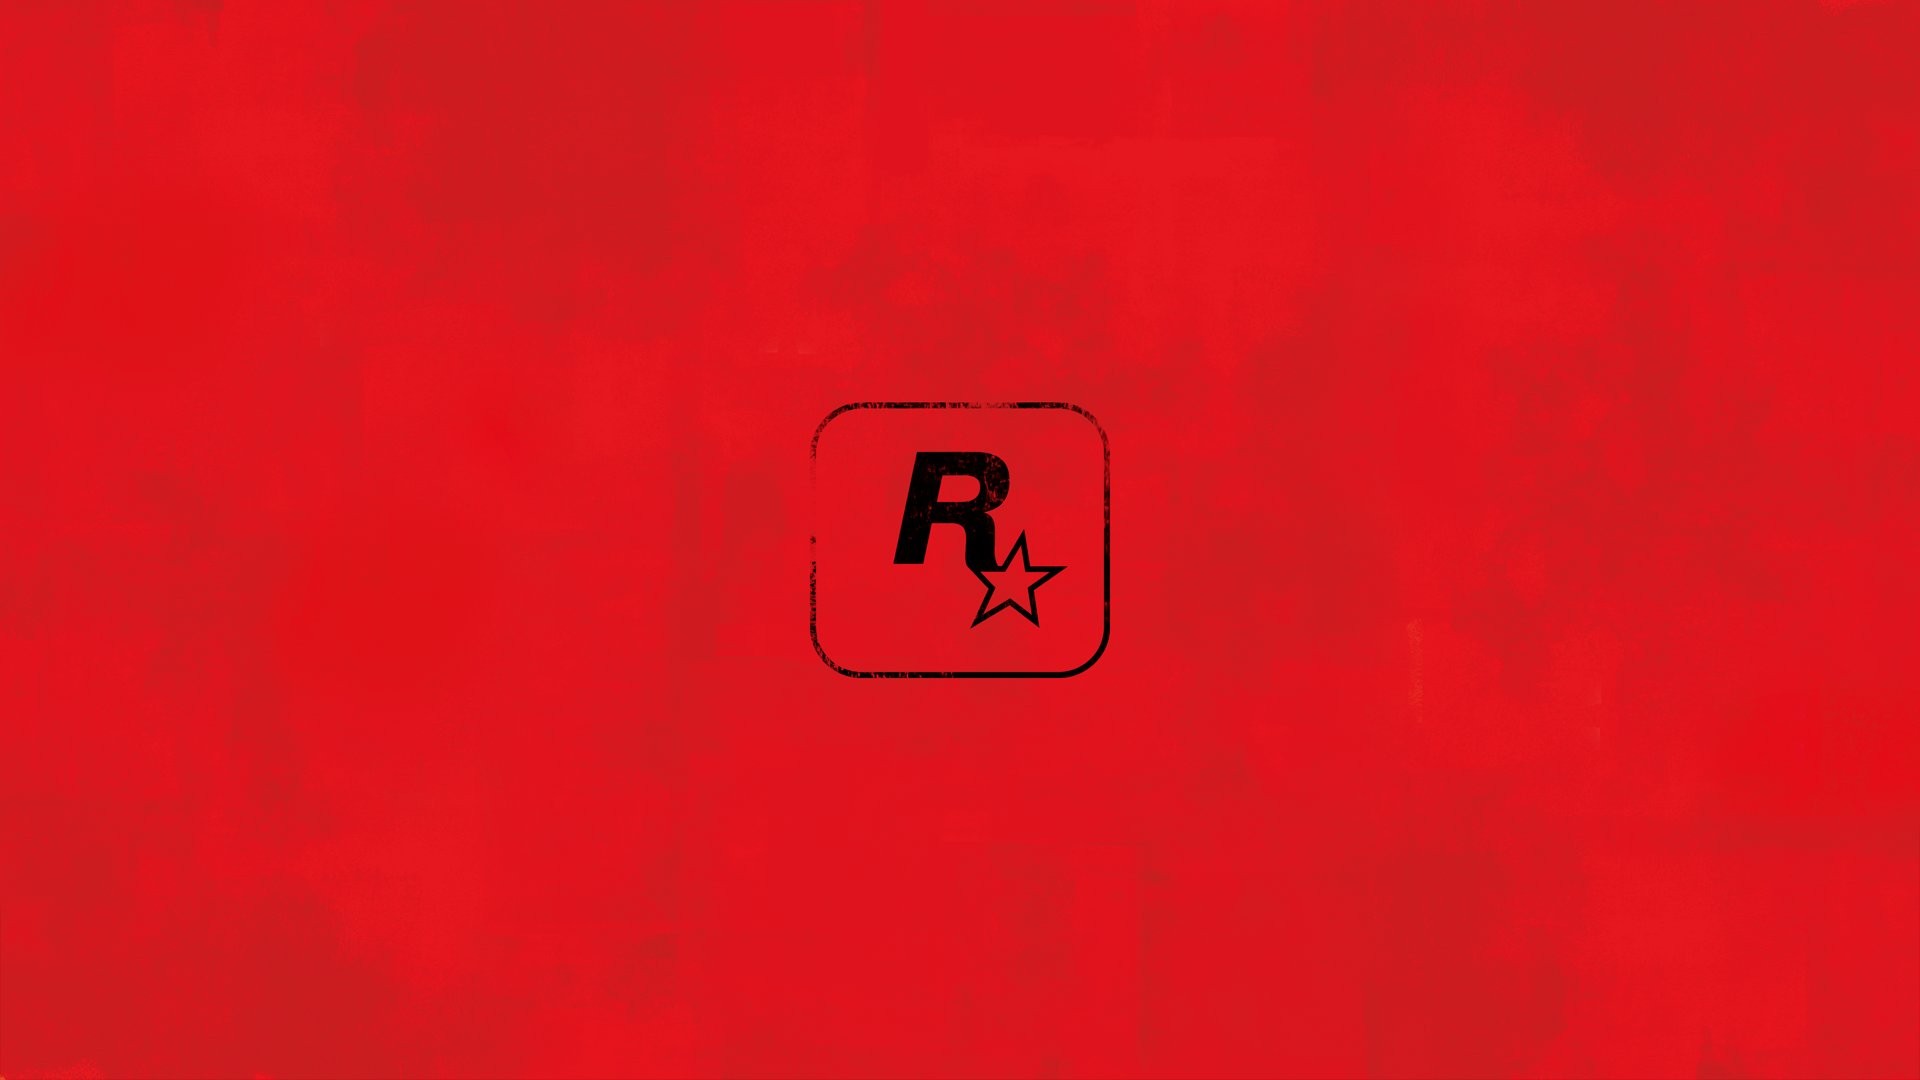 Red Dead Redemption 2 - PS4 - Rockstar Games - Jogos de Ação